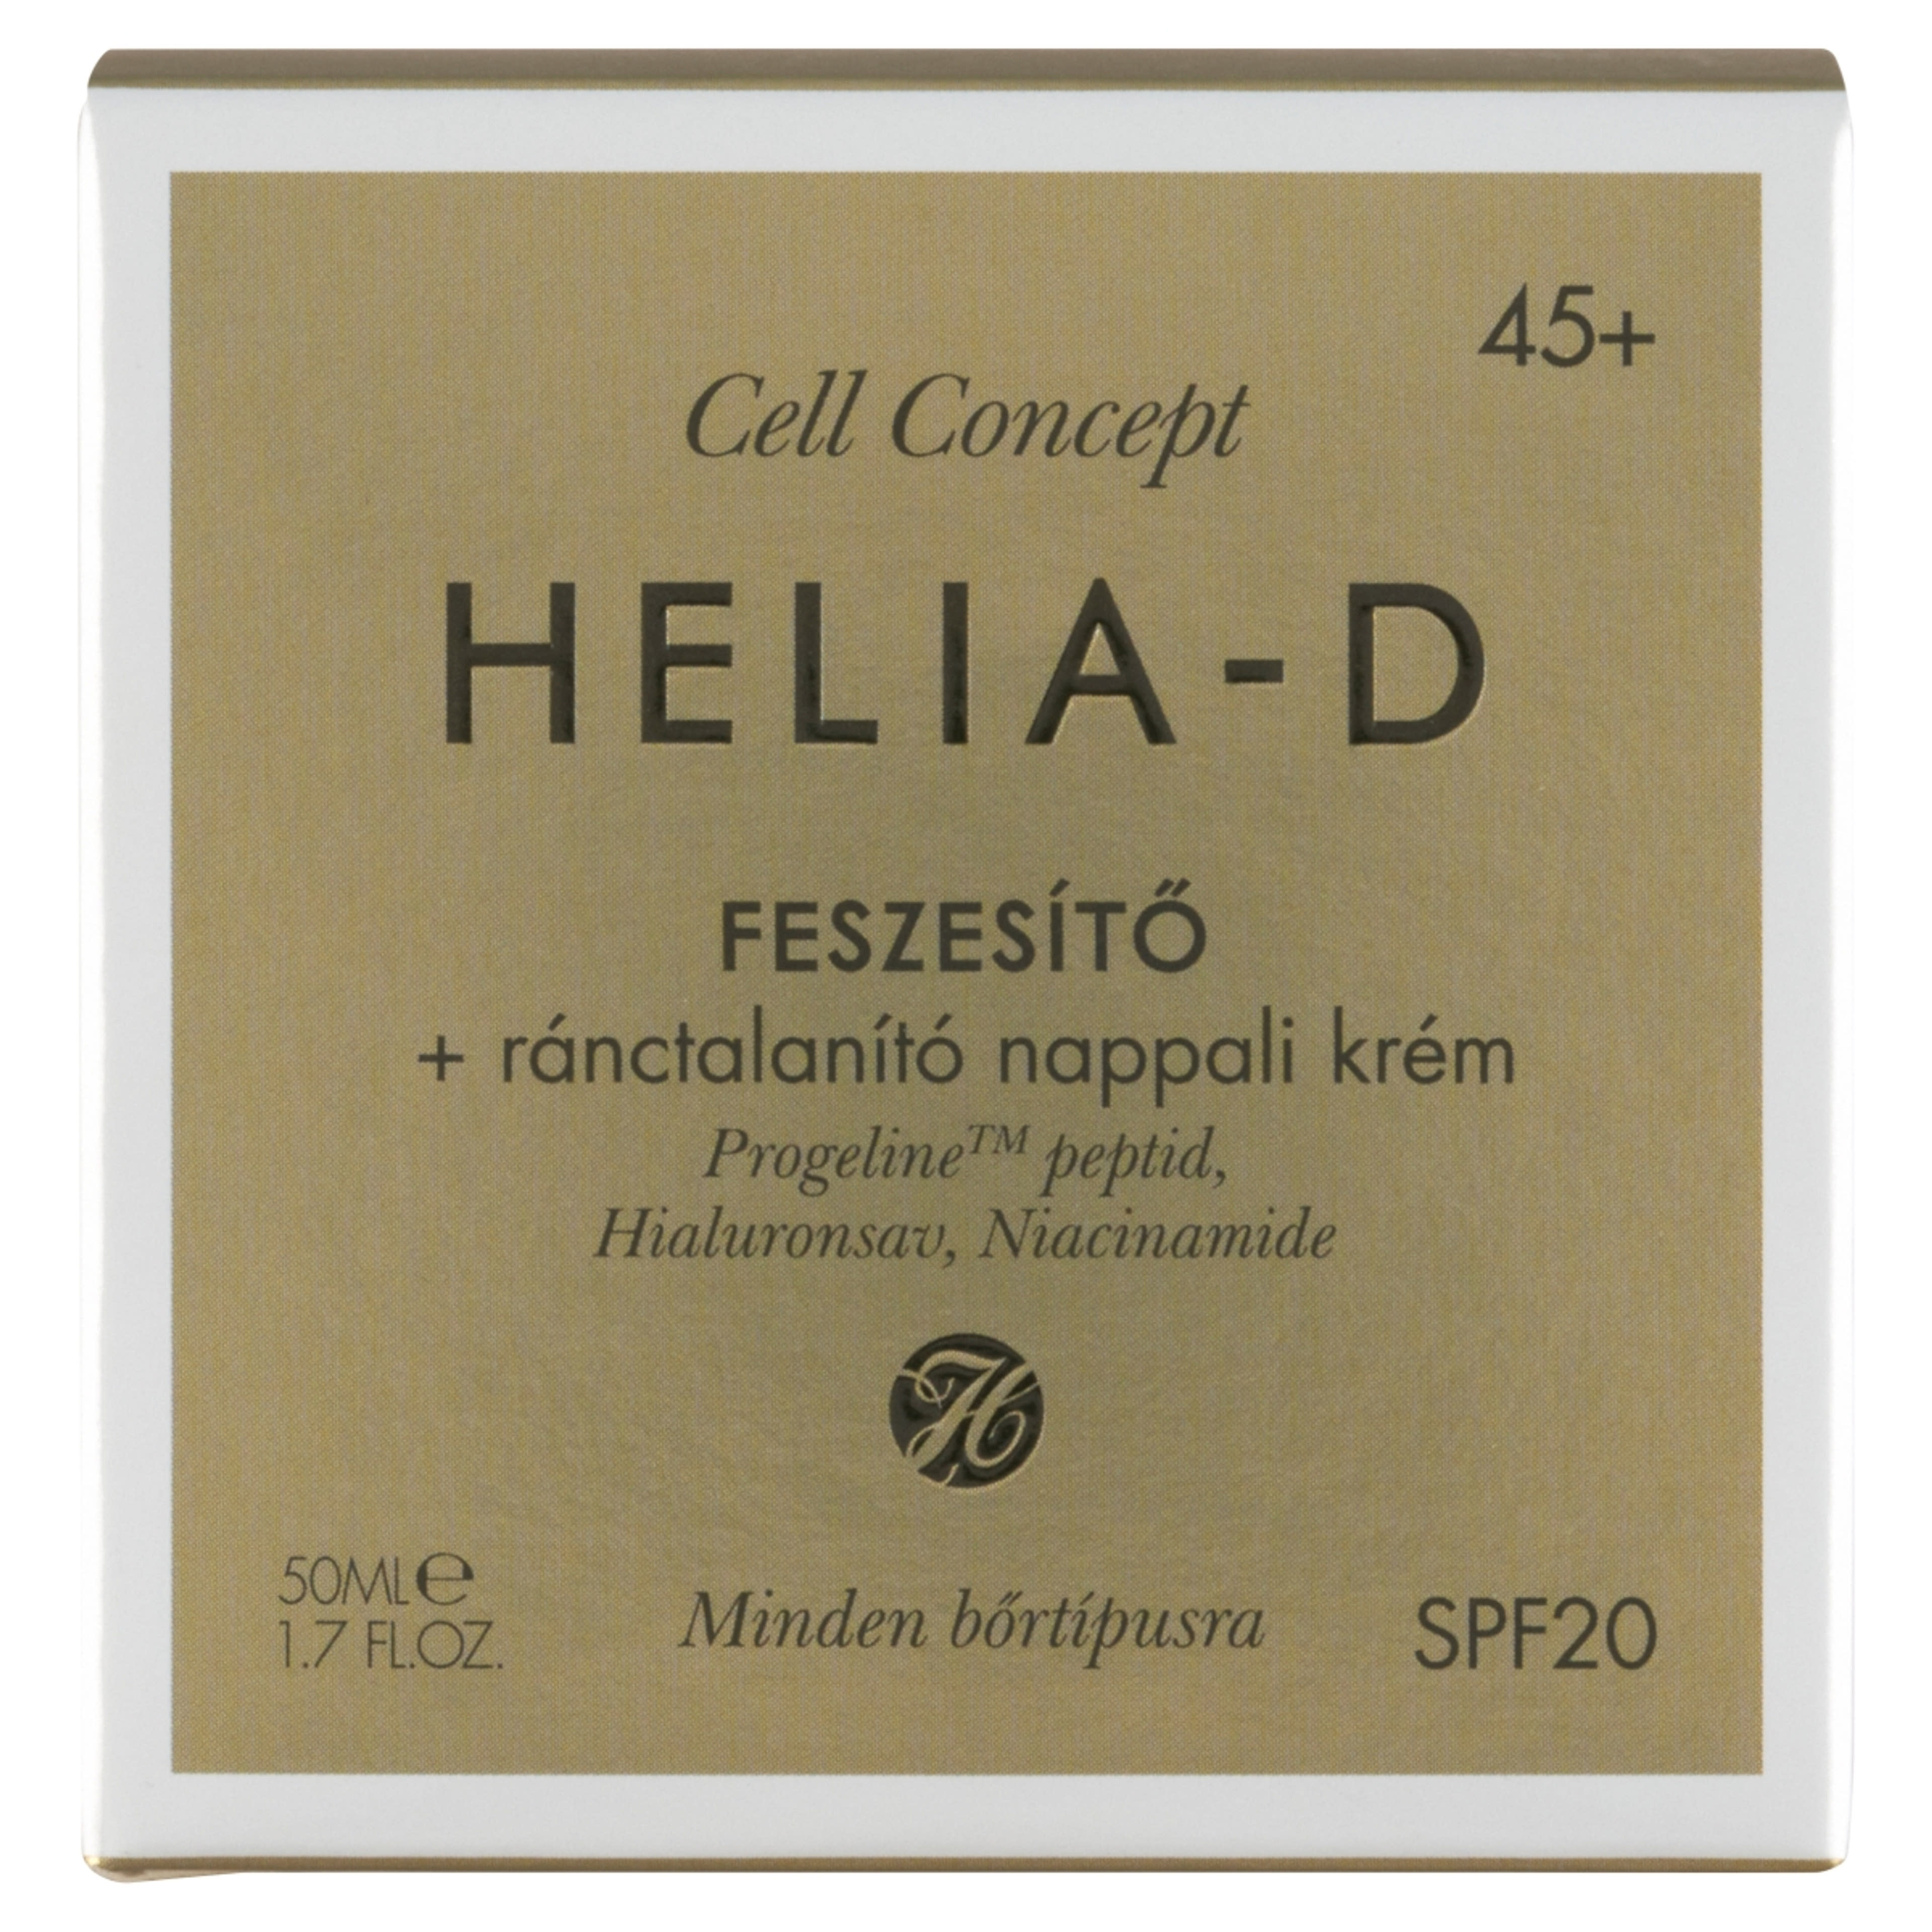 Helia-D Cell Concept feszasítő ránctalanító nappali krém 45+ - 50 ml-2